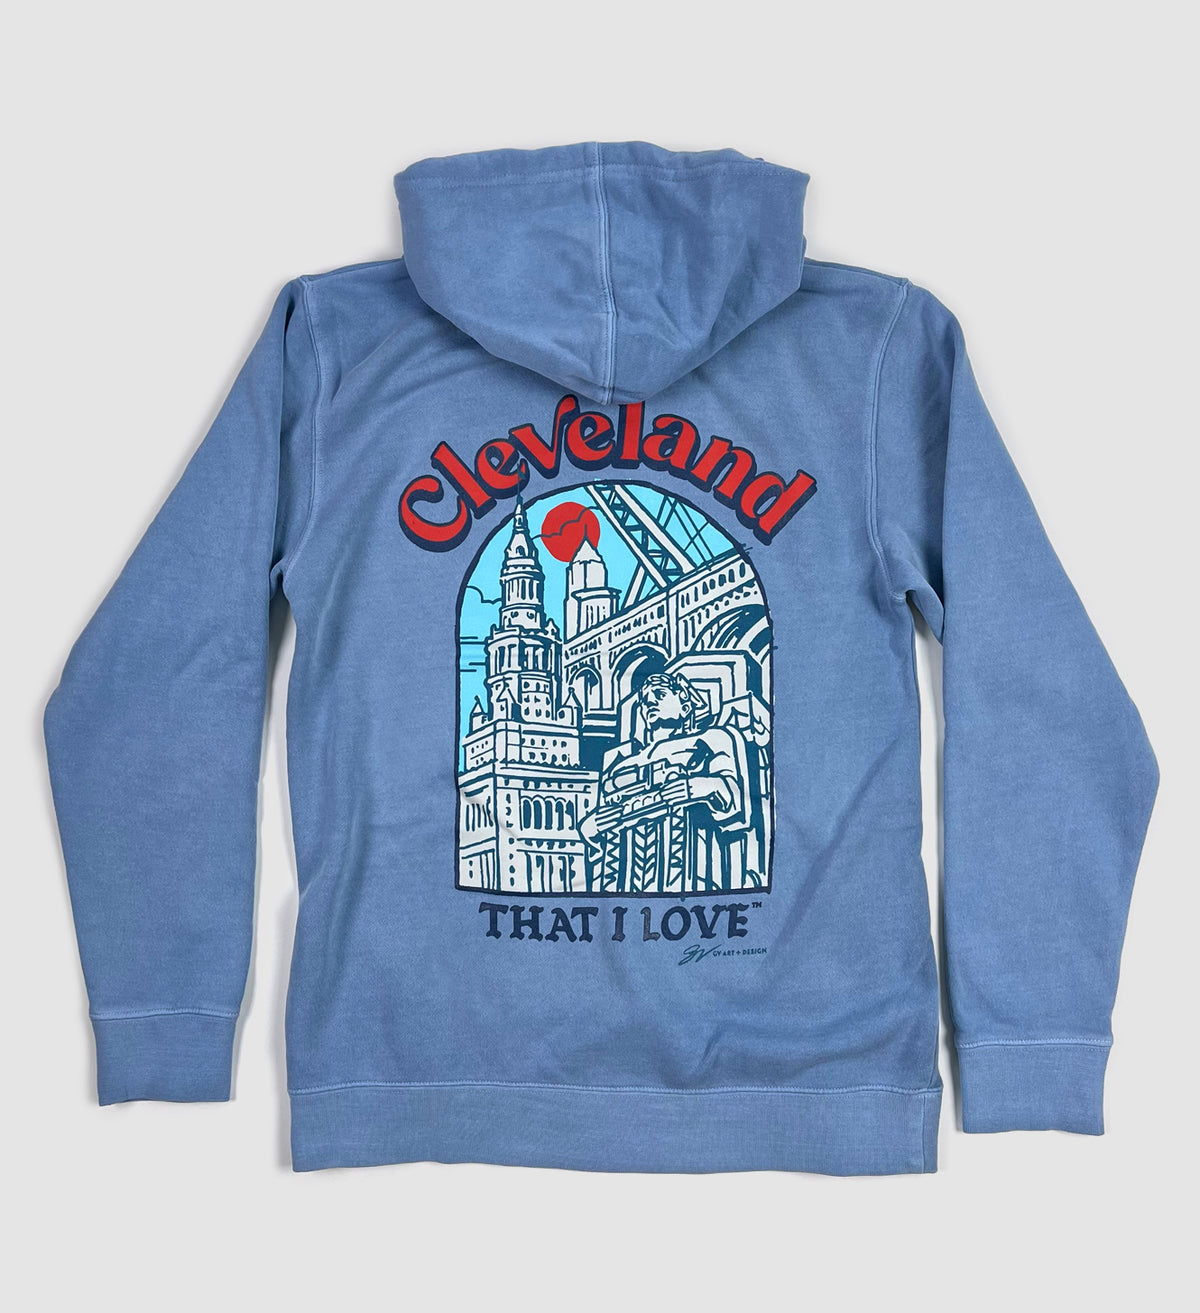 Cincinnati Athletic Club - All-Blue Logo | Cincy Shirts Hooded Sweatshirt / Heather Grey / S